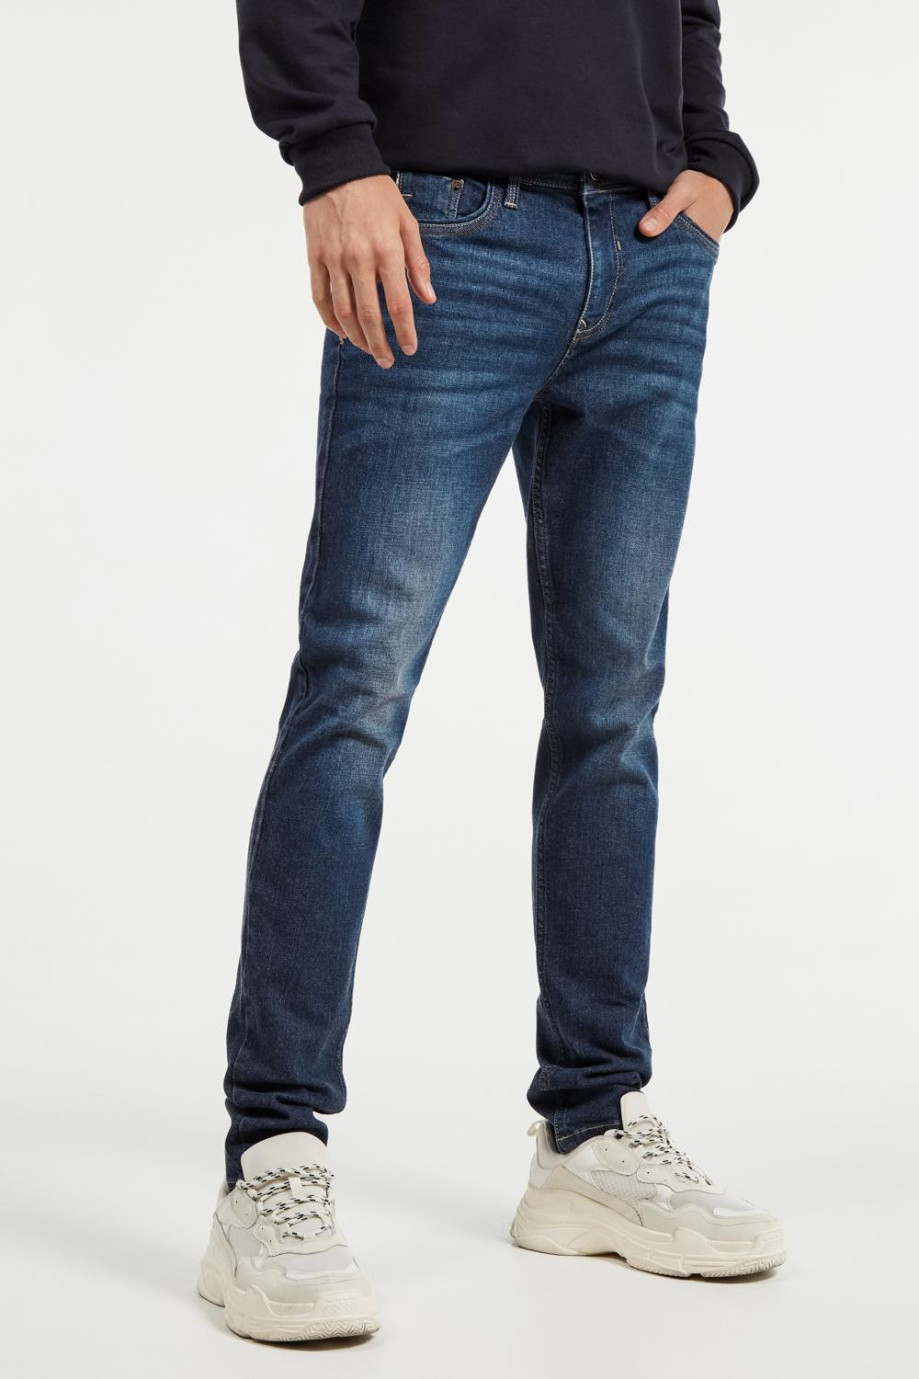 Jean tiro bajo tipo skinny azul oscuro con costuras en contraste y bolsillos